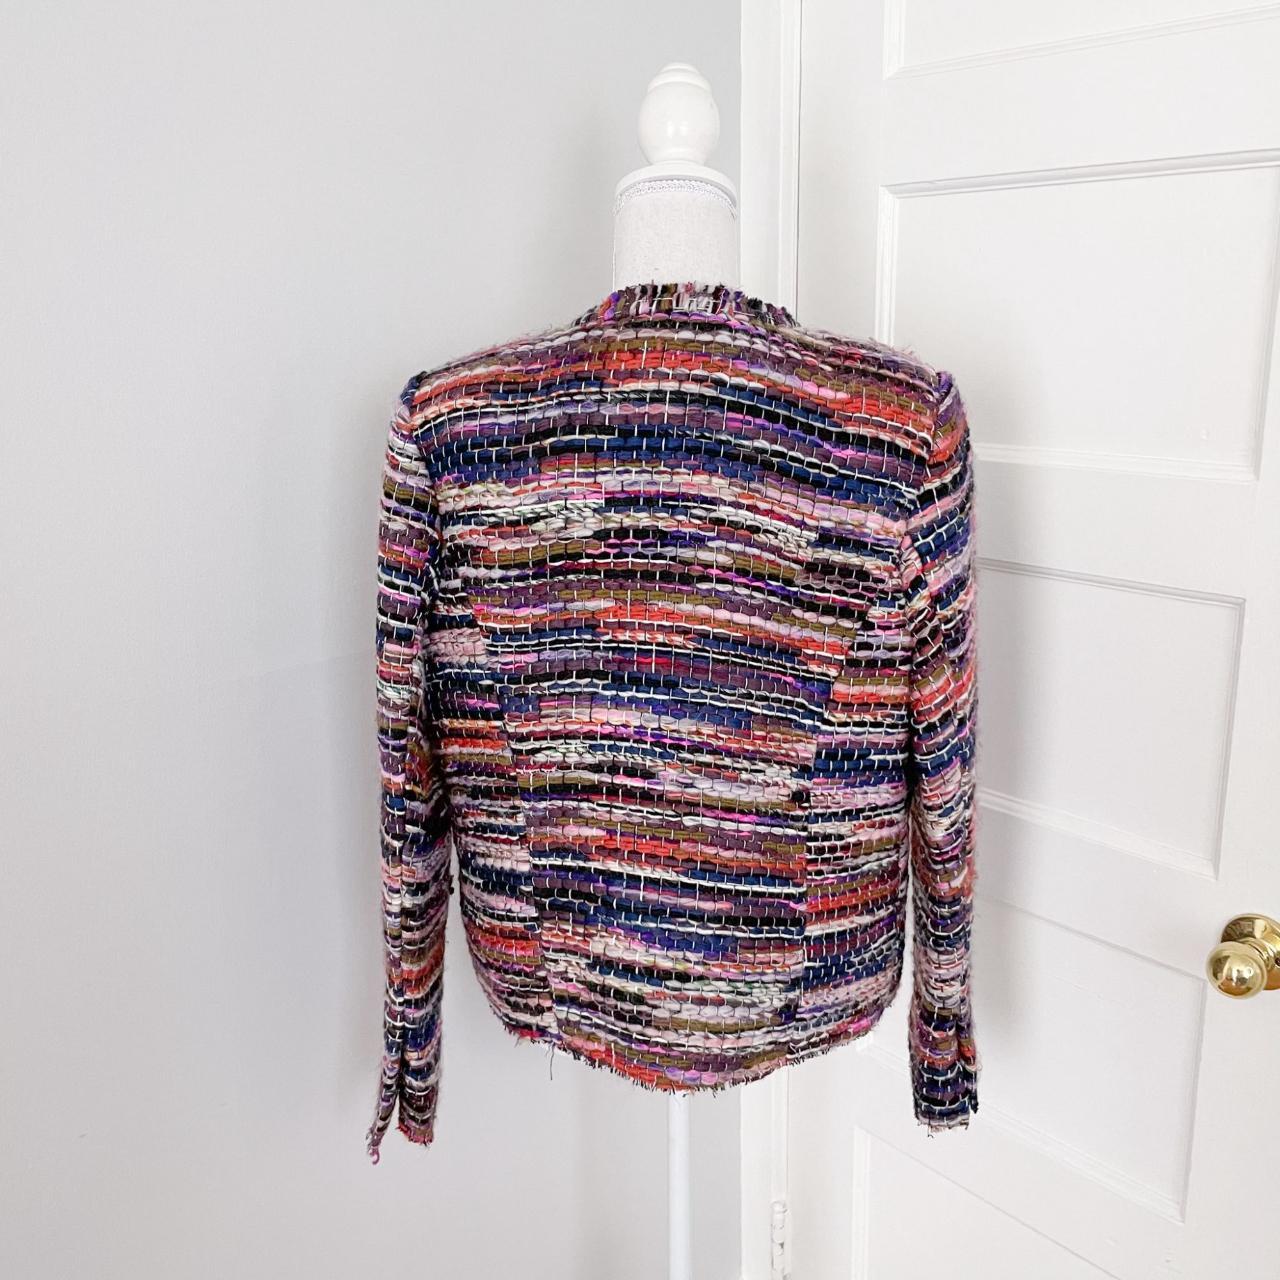 Product Image 2 - Iro Namanta Multicolor Tweed Jacket
Size